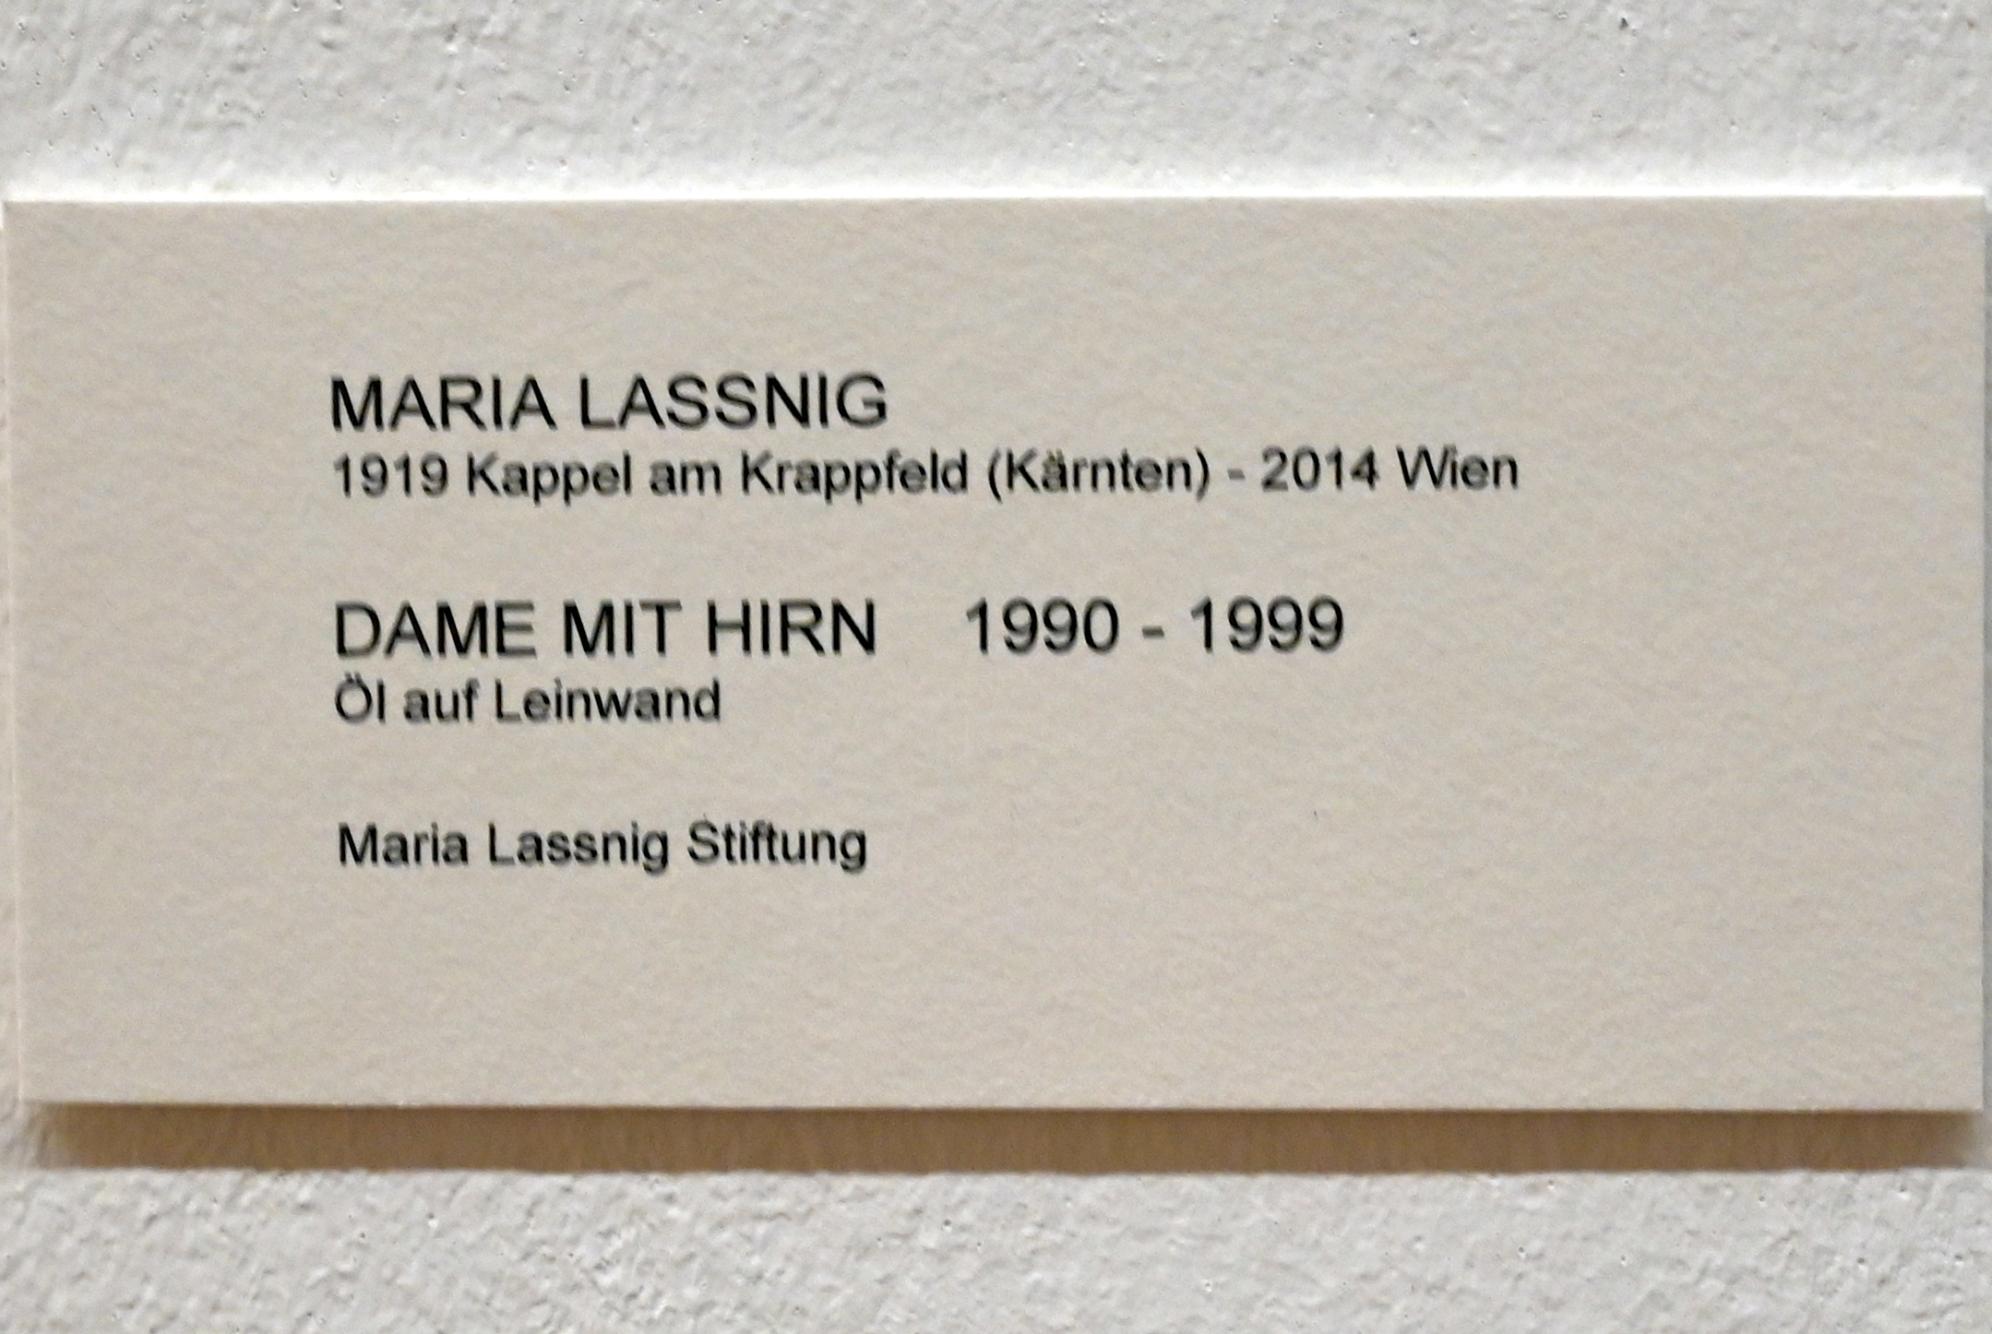 Maria Lassnig (1945–2011), Dame mit Hirn, Bonn, Kunstmuseum, Ausstellung "Maria Lassnig - Wach bleiben" vom 10.02. - 08.05.2022, Saal 1, 1990–1999, Bild 2/2